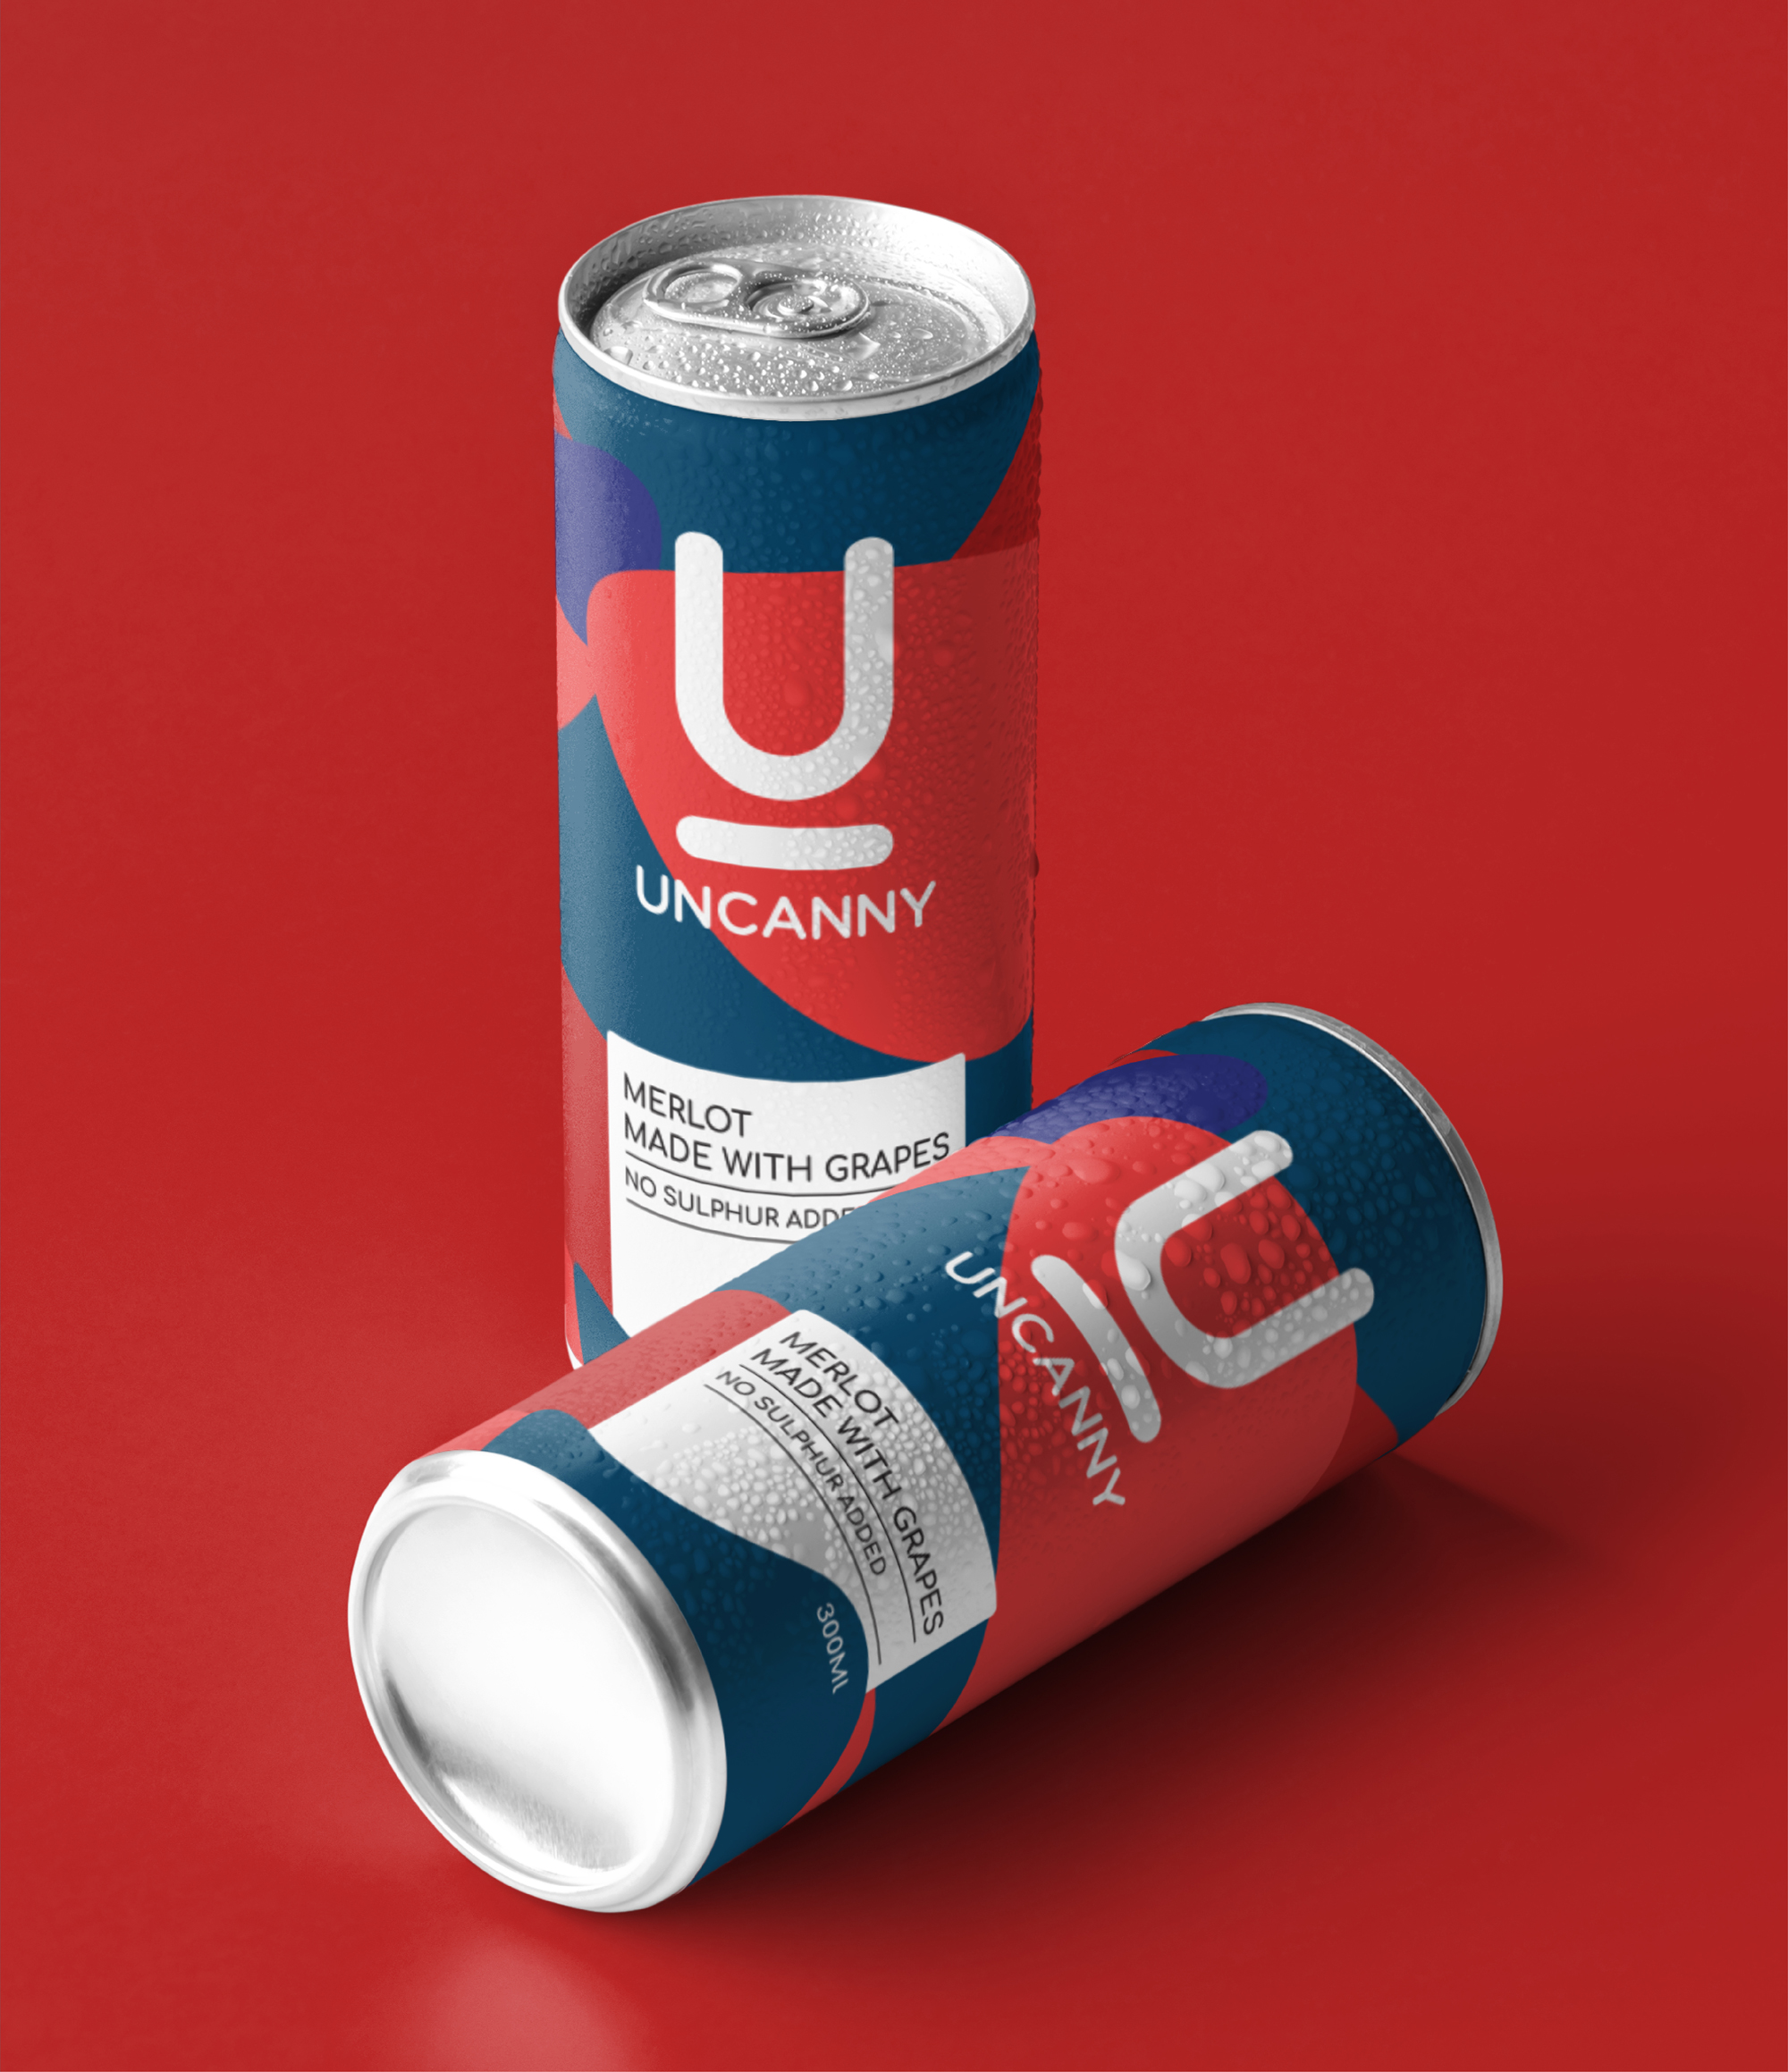 Uncanny branding / packaging